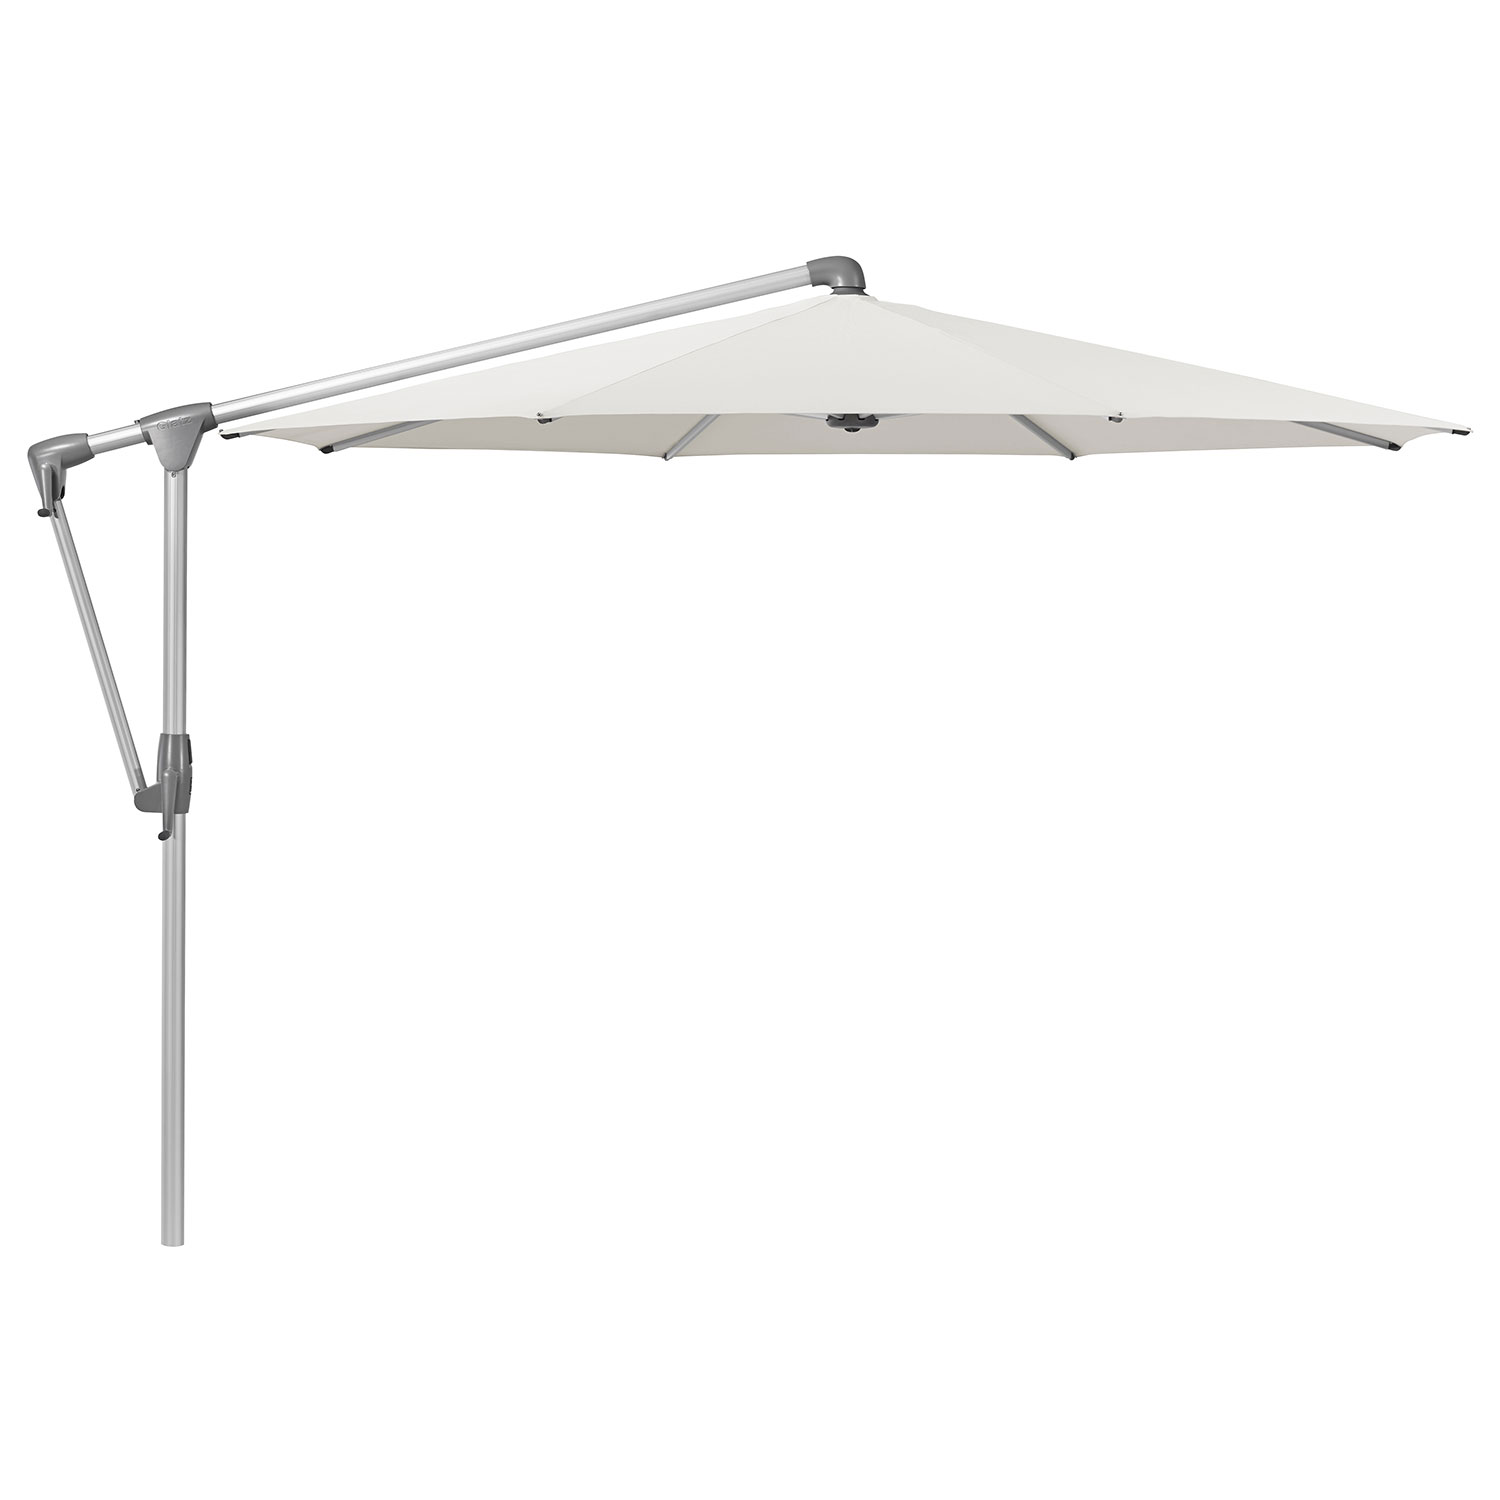 Sunwing Casa frihängande parasoll 300 cm kat.5 anodizerad alu / 500 plaster Glatz